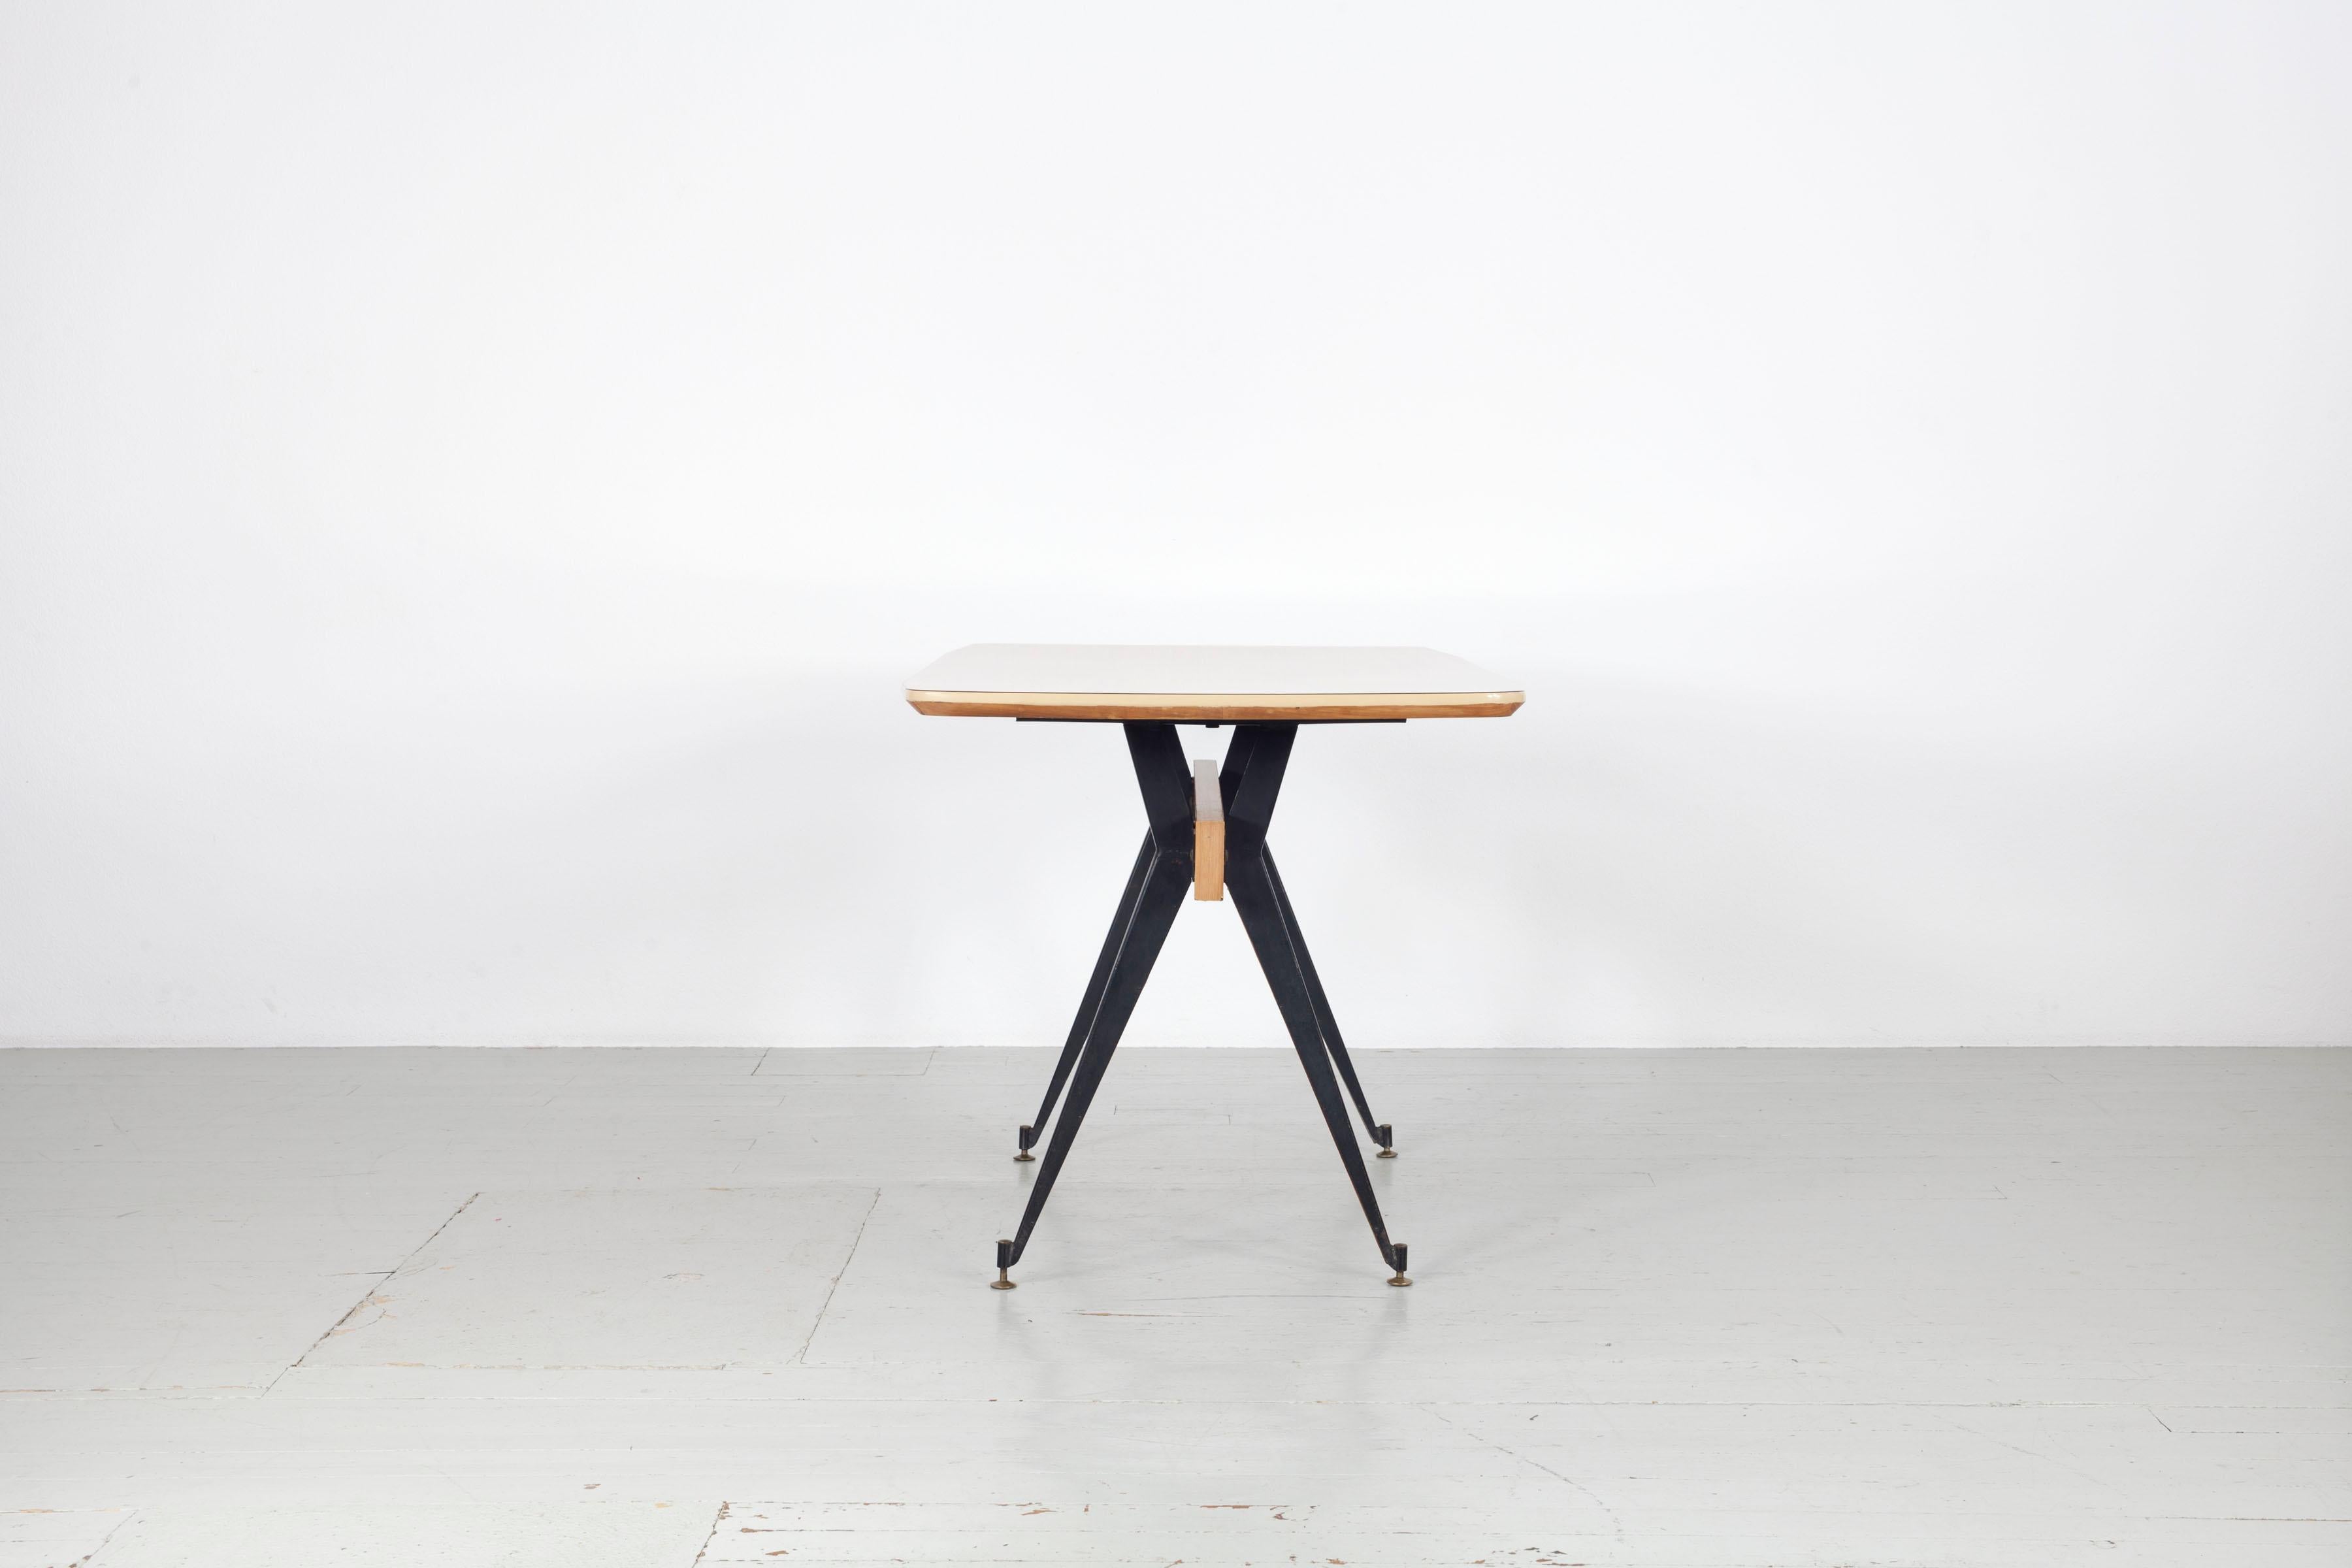 Dieser italienische Esstisch wurde von Carlo Ratti in den 1950er Jahren entworfen. Der Tisch wurde in Mailand von der Firma Industria Legni Curvati hergestellt.  Die hölzernen Tischbeine sind mit dunklem Eisen ummantelt und stehen auf verstellbaren